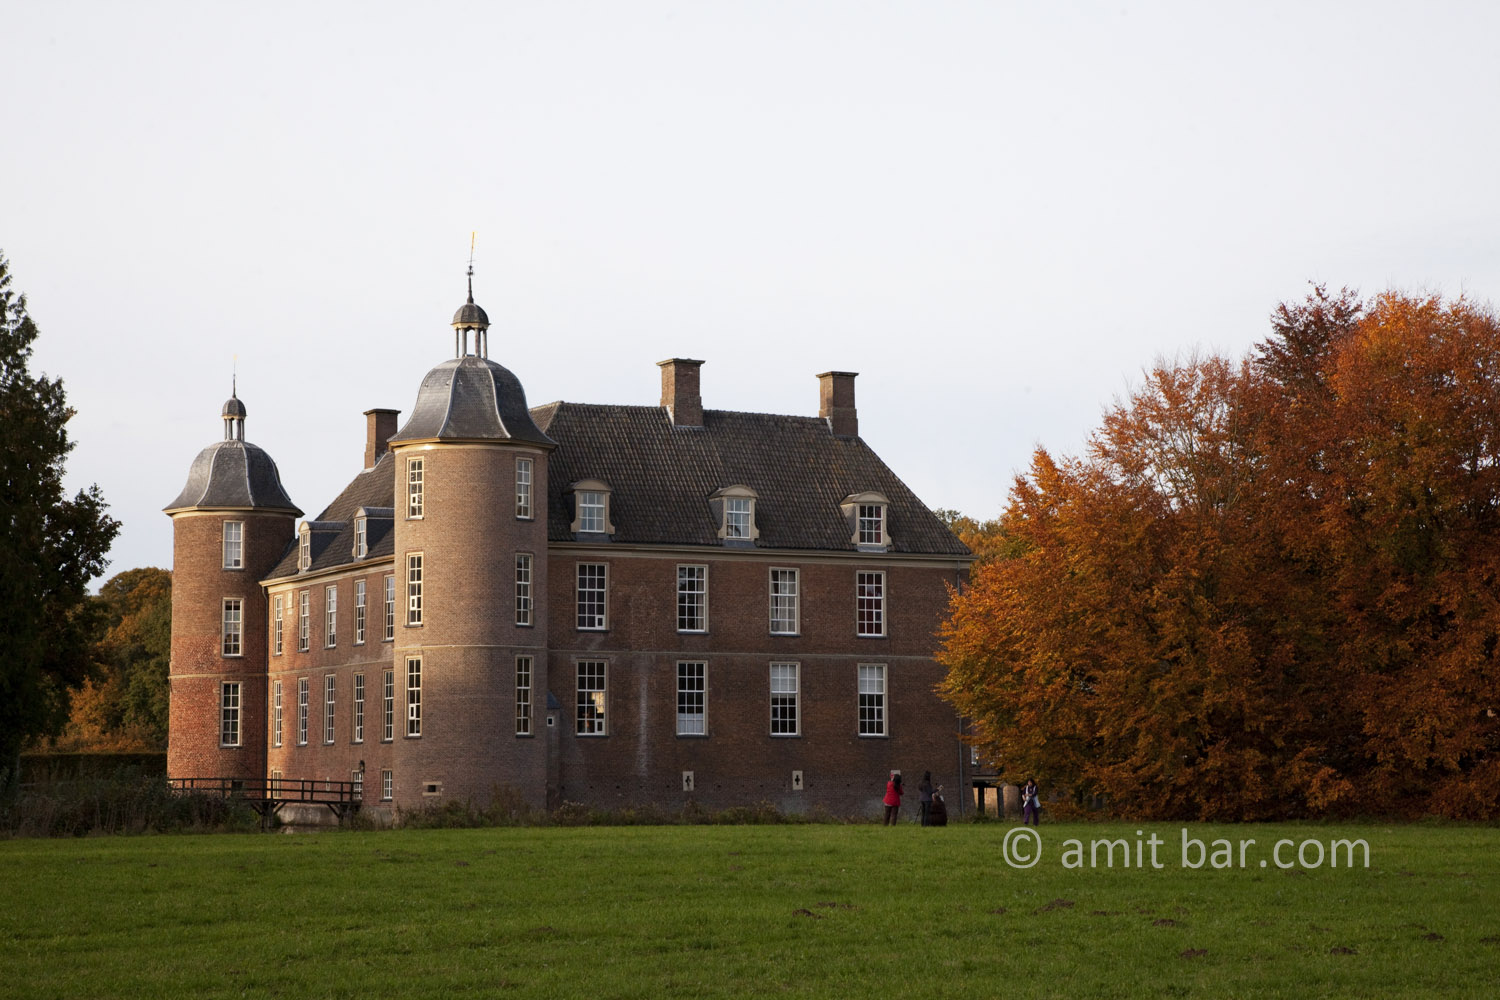 Autumn at castle Slangenburg in De Achterhoek, The Netherlands